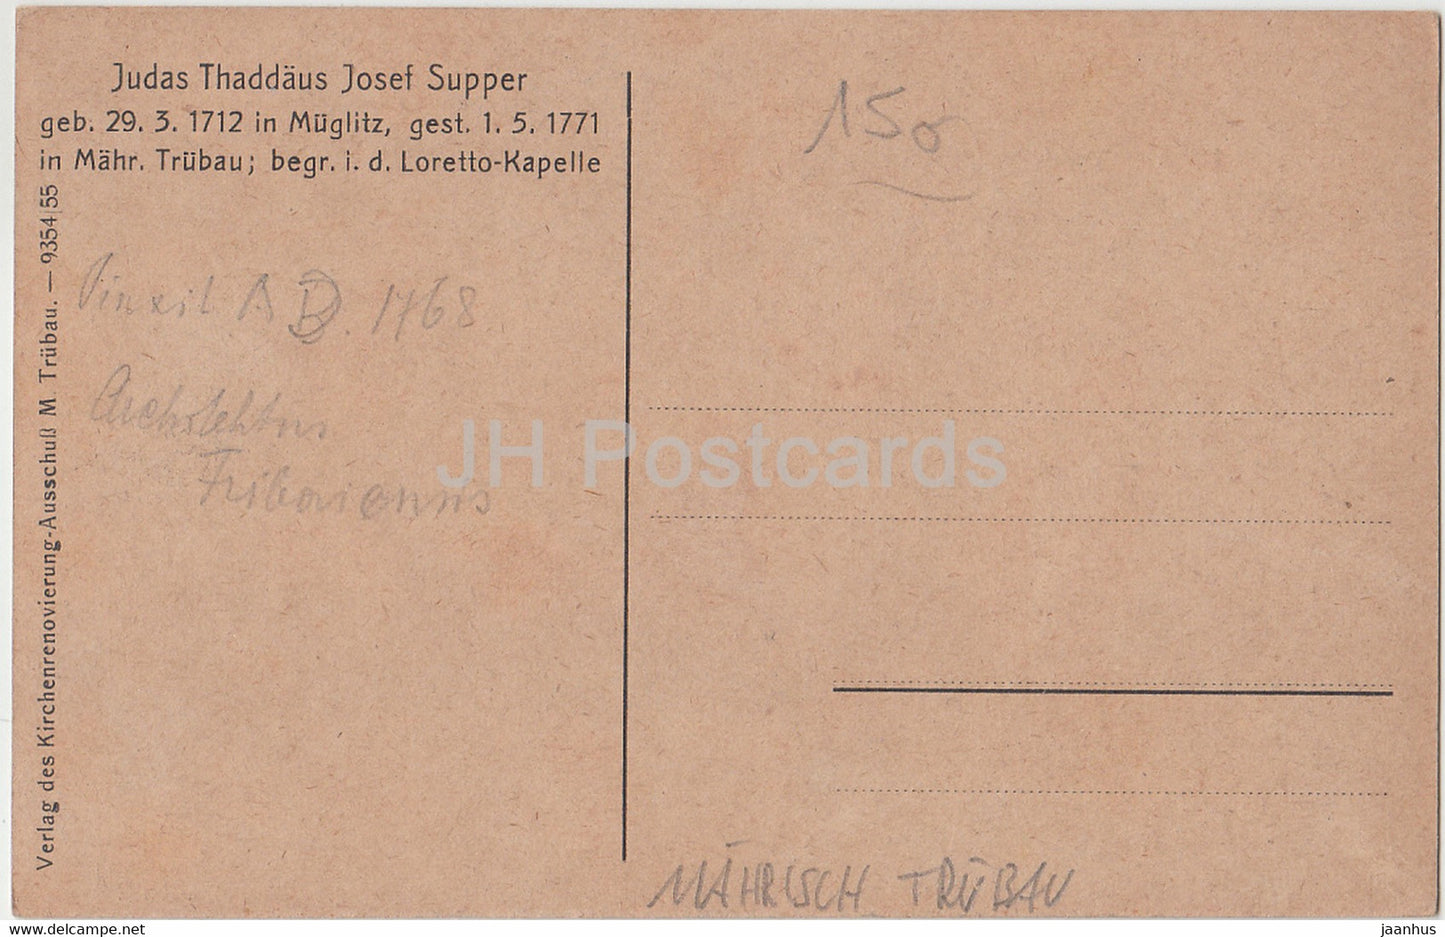 Judas Thaddaus - Josef Supper - Mahr Trubau - Moravska Trebova - Loretto Kapelle - carte postale ancienne - République tchèque - utilisé